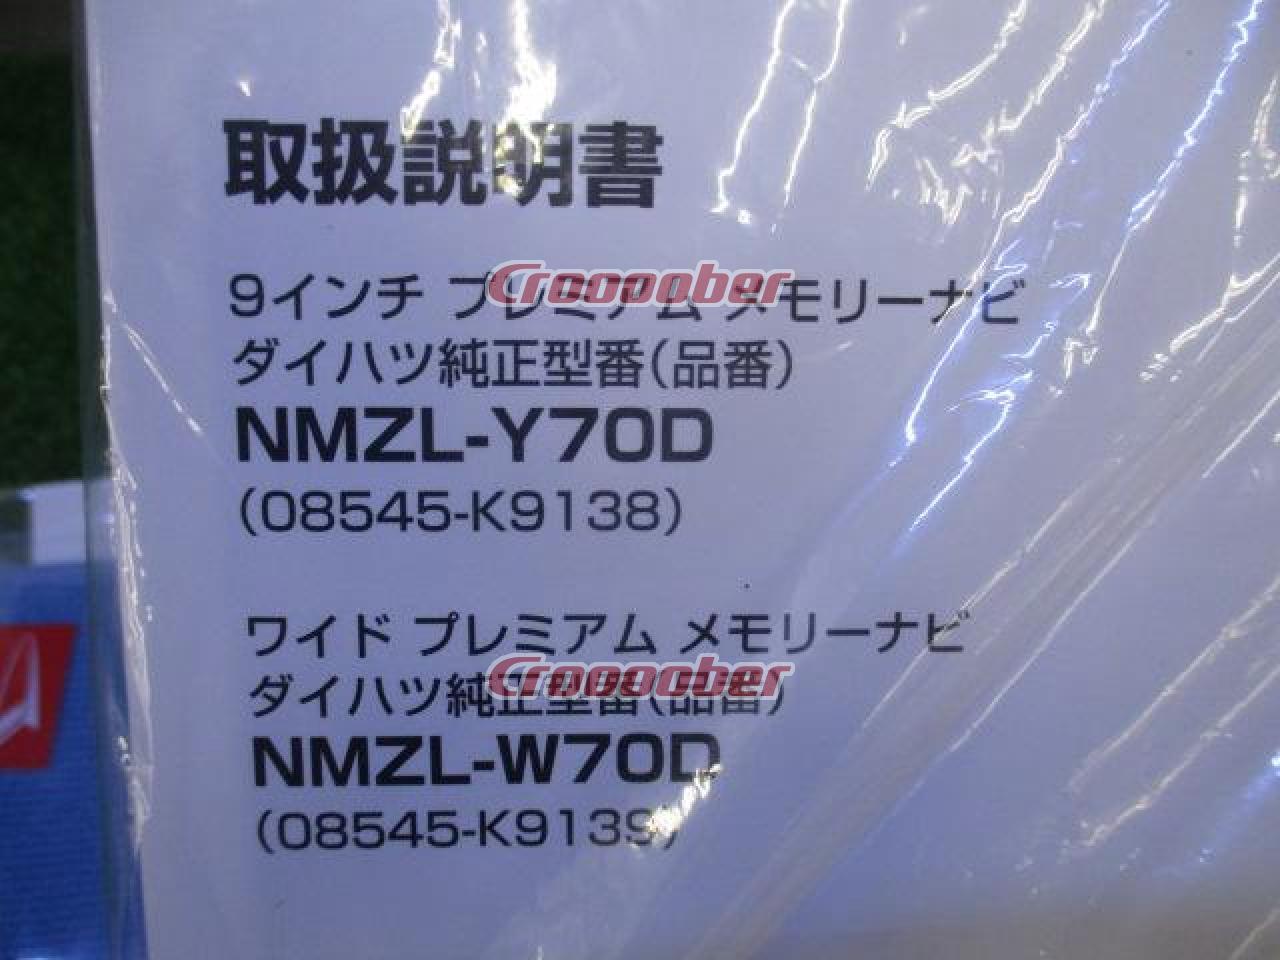 ダイハツ純正(DAIHATSU) NMZL-W70D2 未使用品ALPINE製2020年モデル 